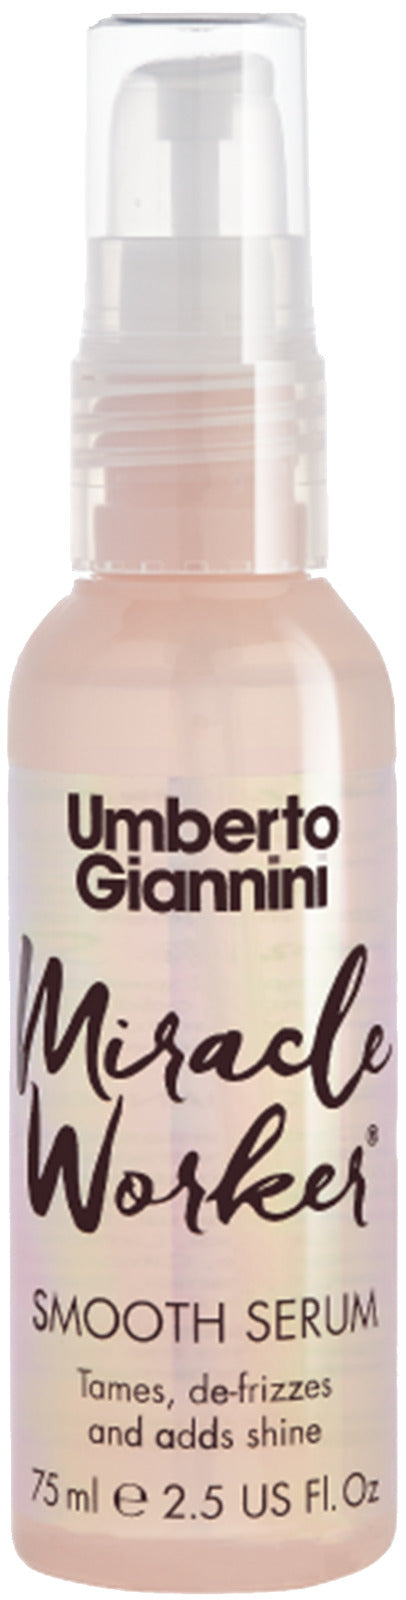 Umberto Giannini: Miracle Worker Smooth Serum (75ml)